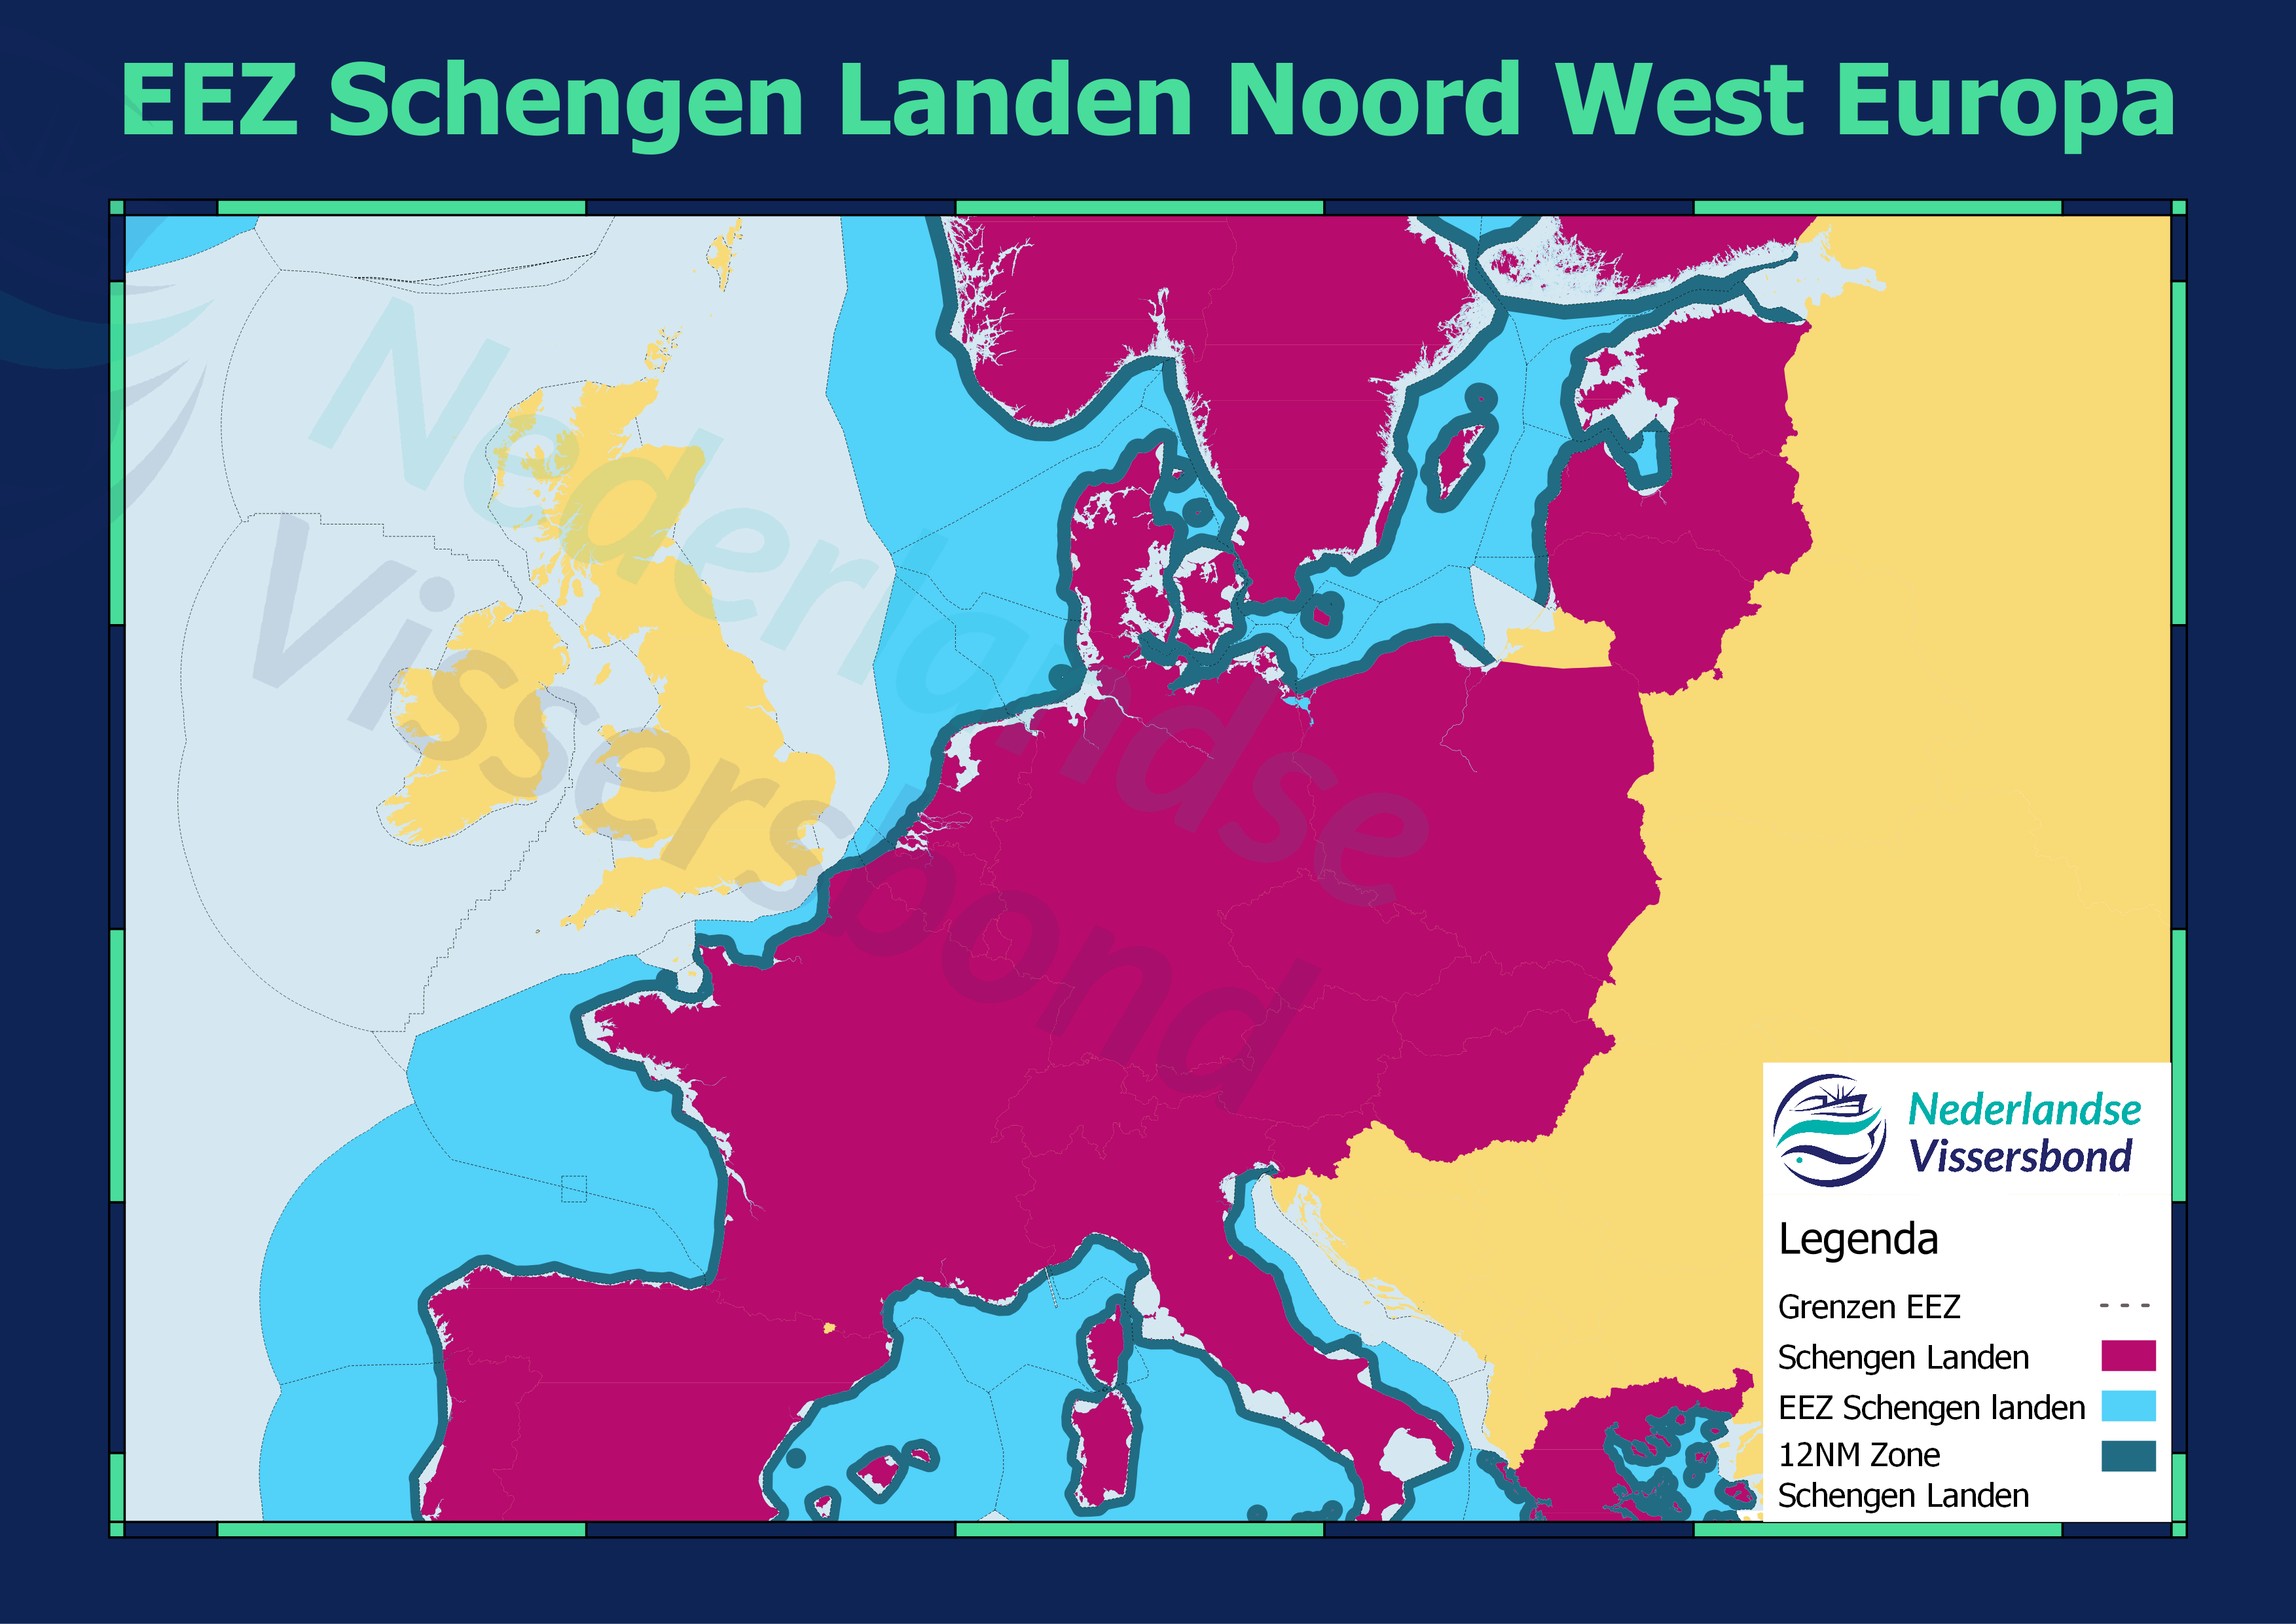 Schengenlanden